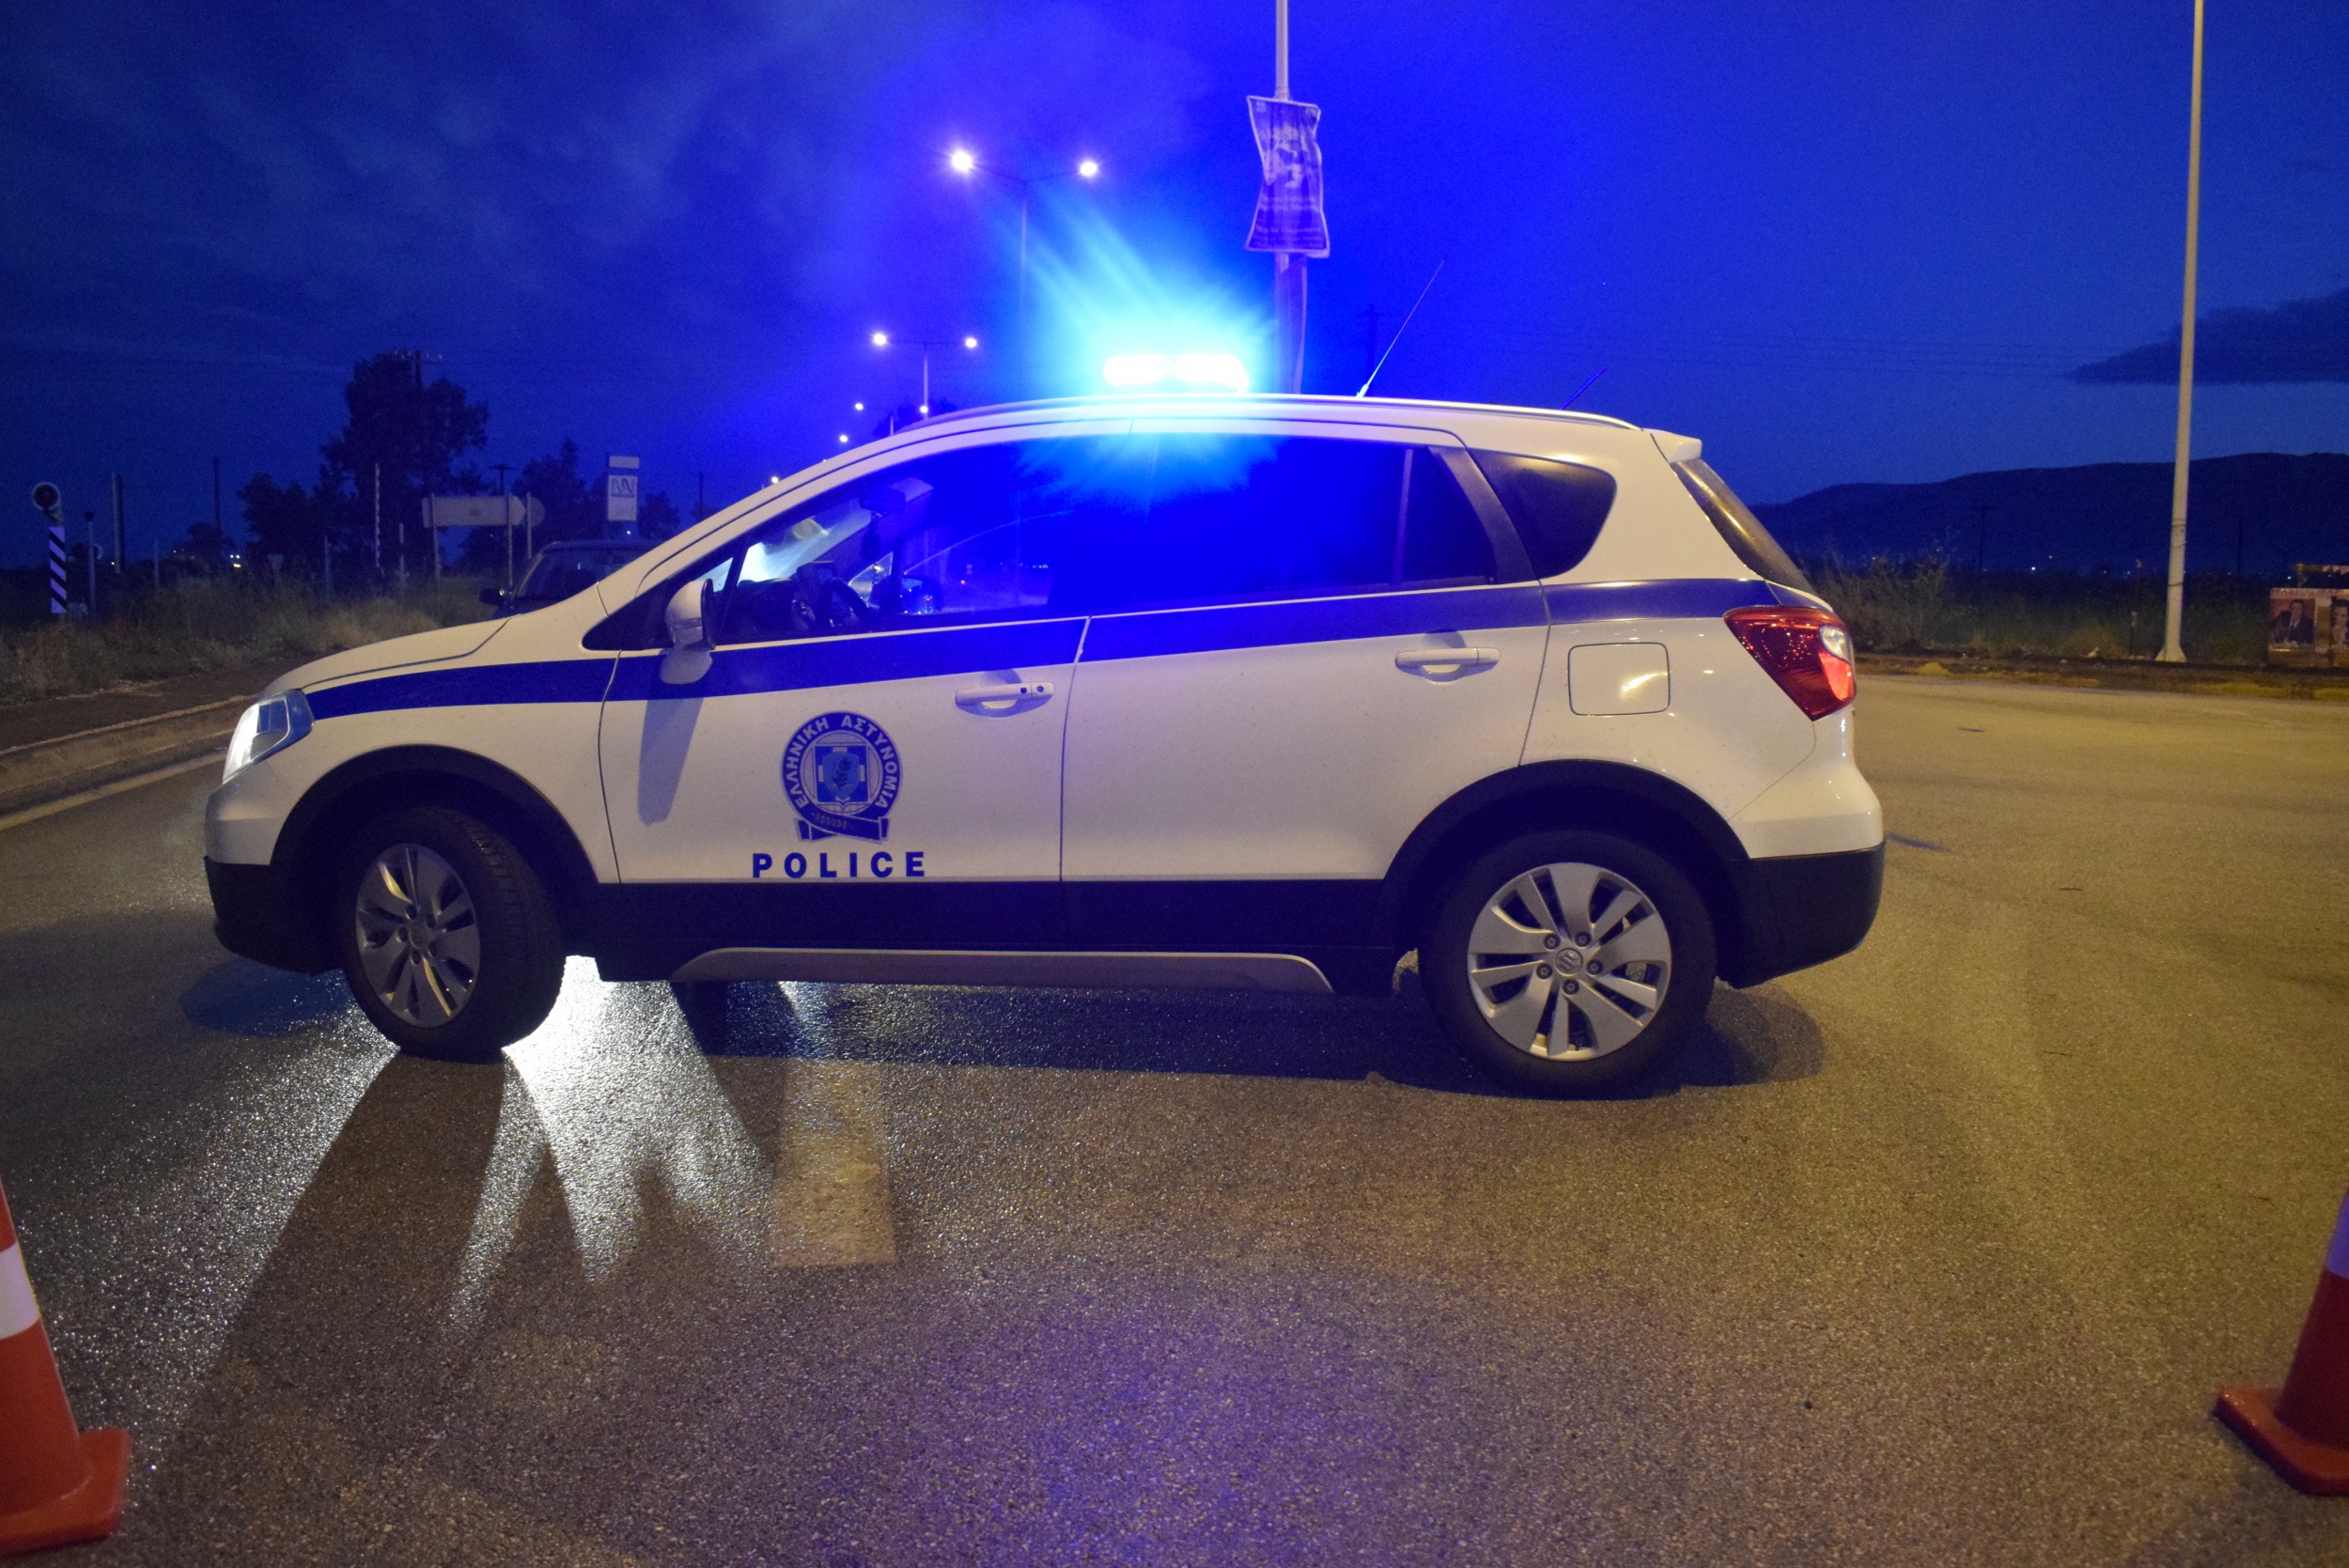 14 αστυνομικοί σε καραντίνα: Τους έθεσε εκτός μάχης Αλβανός με… φτυσίματα – Τι θα συμβεί αν υπάρξουν κι άλλοι;